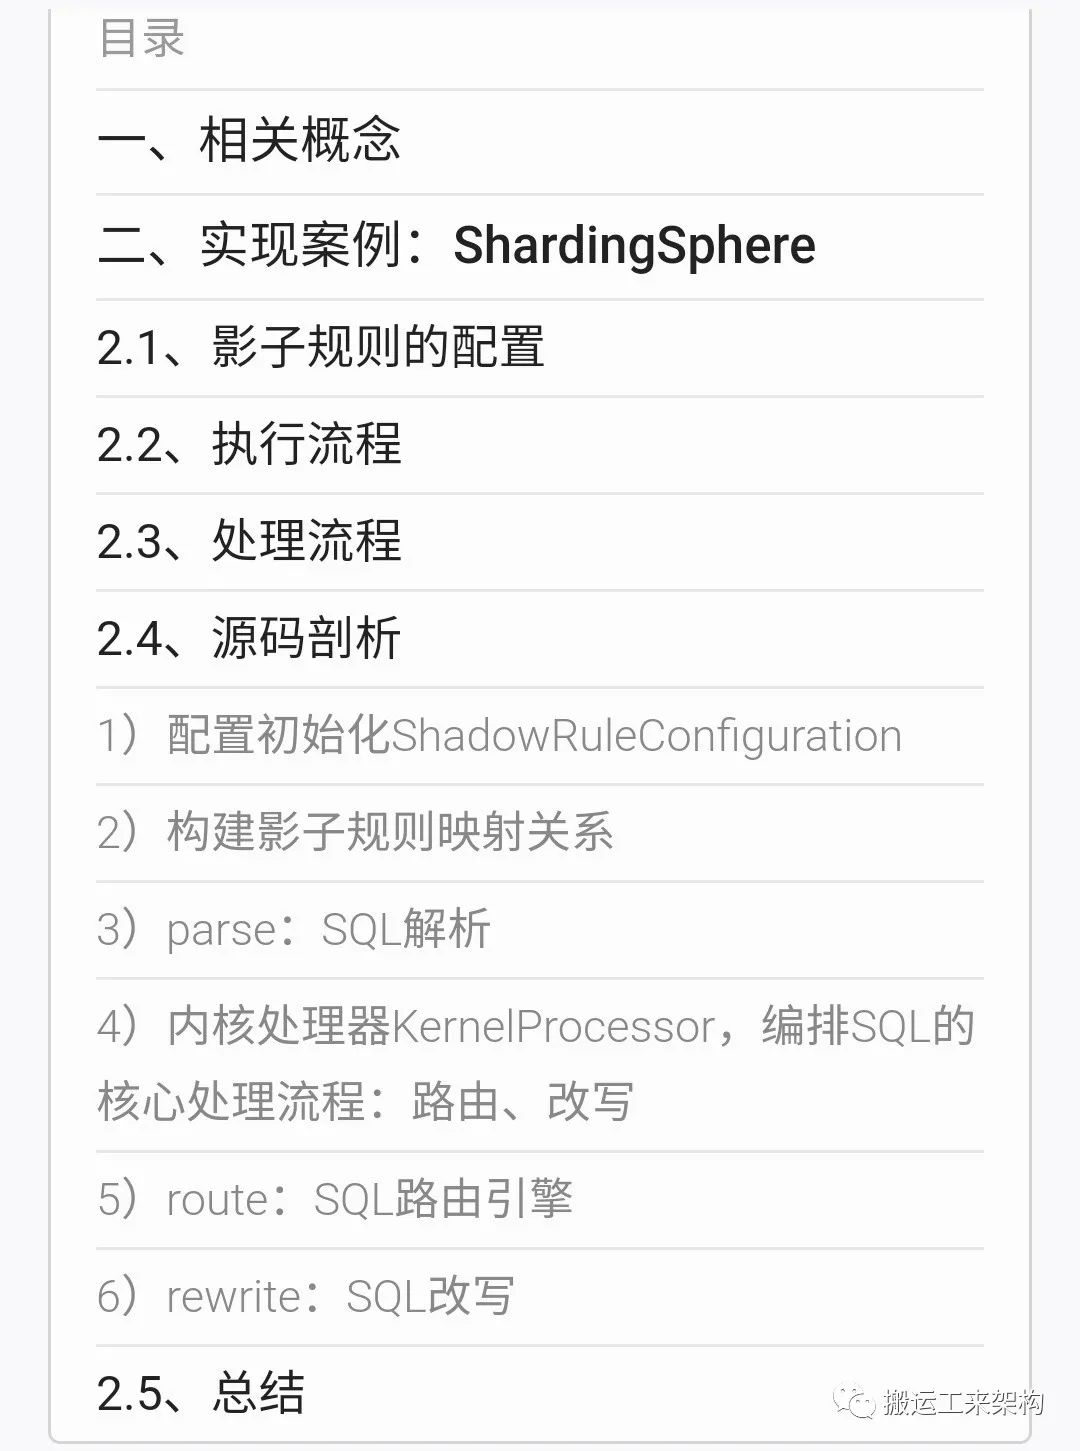 全链路压测之影子库及ShardingSphere实现影子库源码剖析插图1